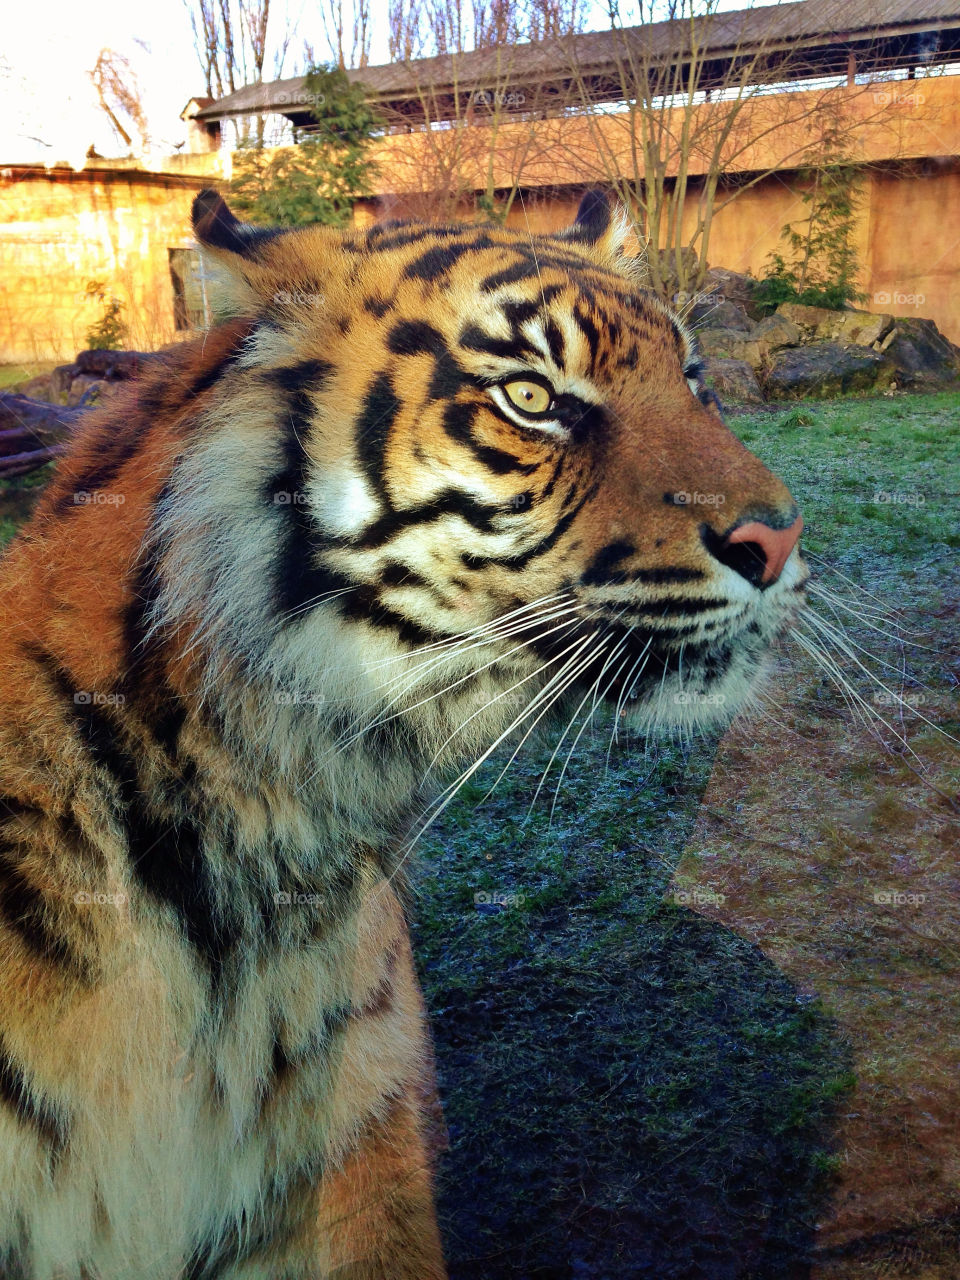 Tiger at the zoo